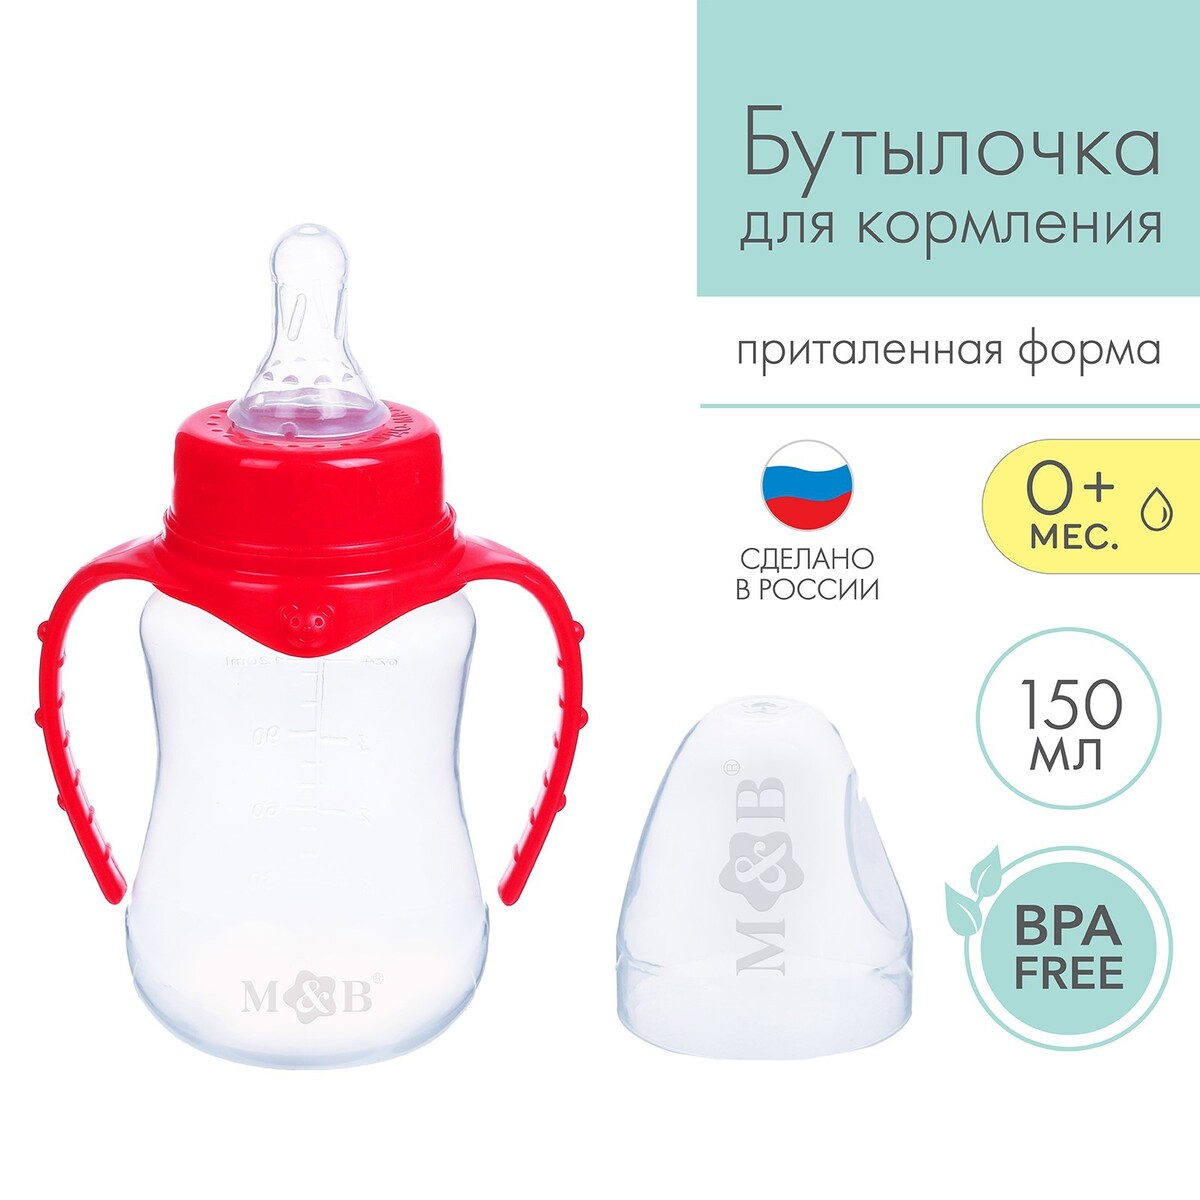 Бутылочка для кормления, классическое горло, приталенная, с ручками, 150 мл., от 0 мес., цвет красный бутылочка для кормления mum